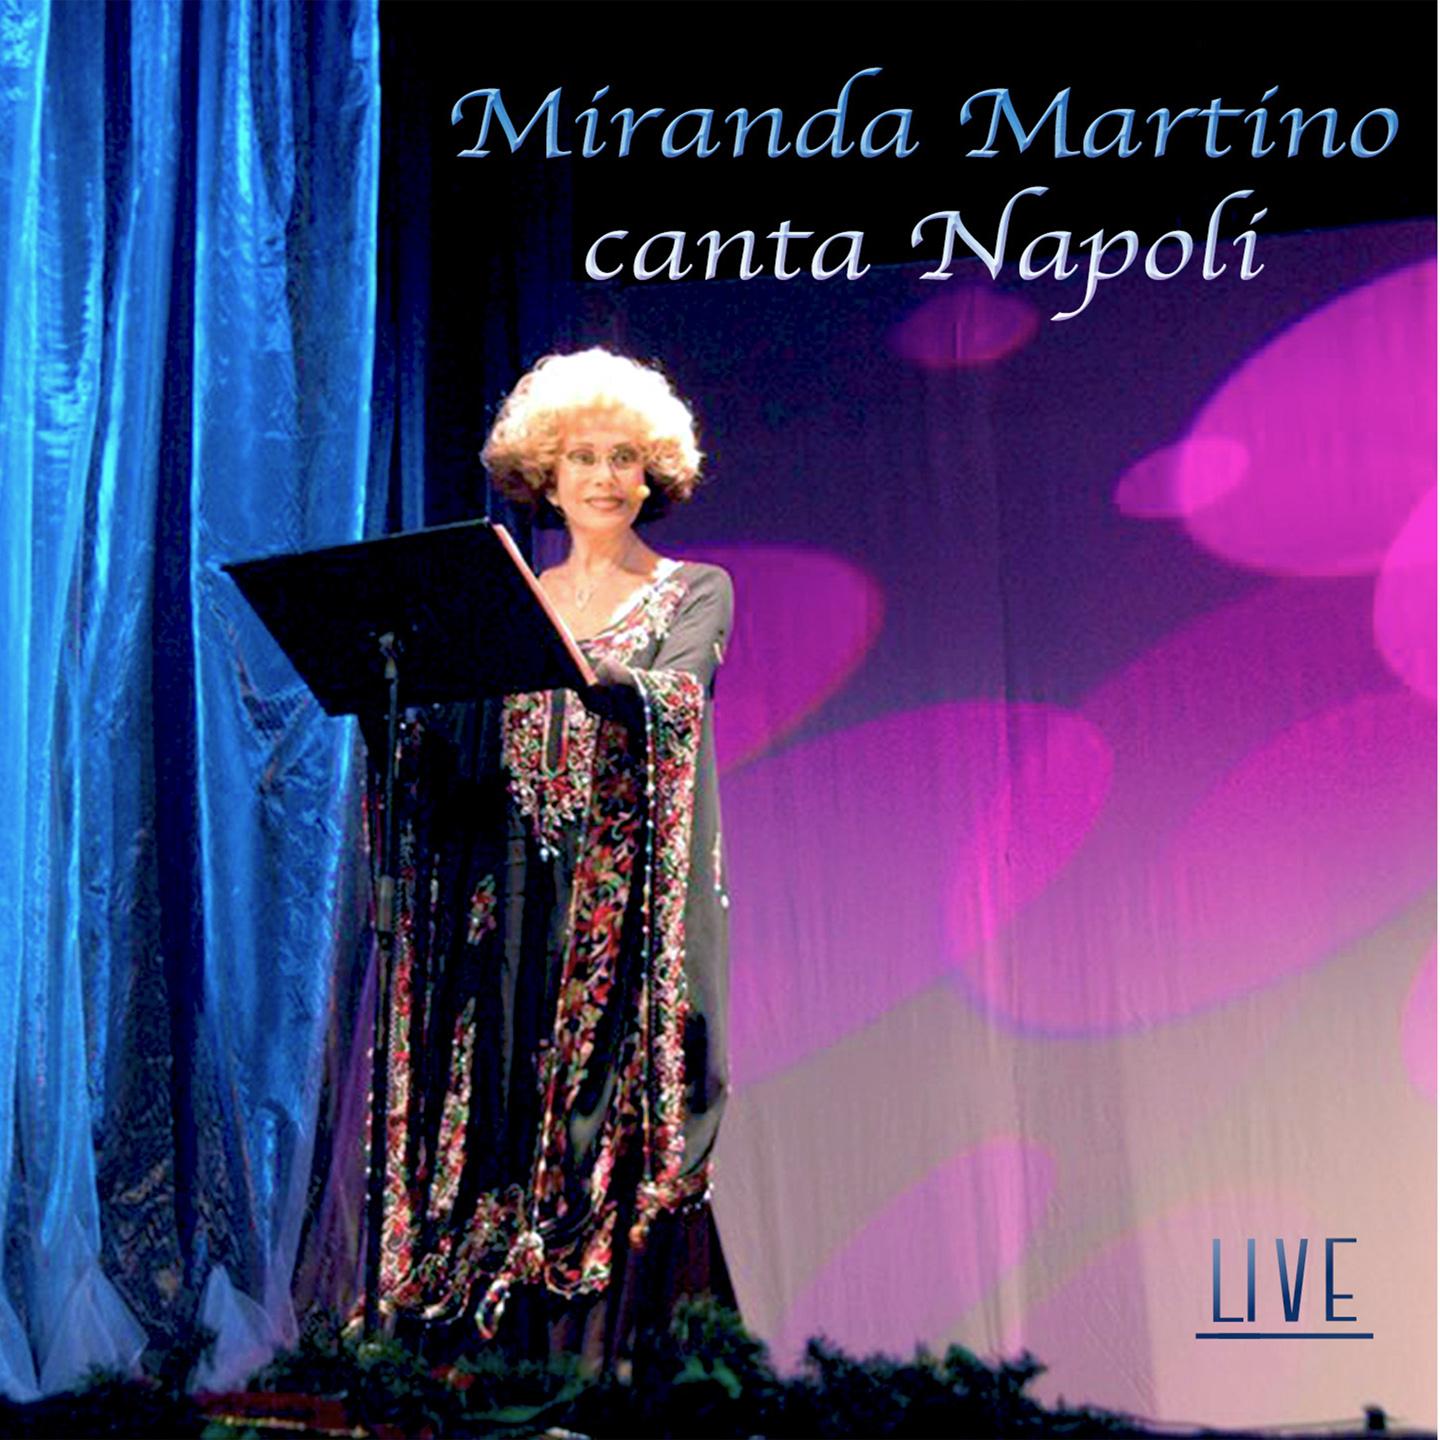 Miranda Martino - O surdato 'nnammurato (Live)